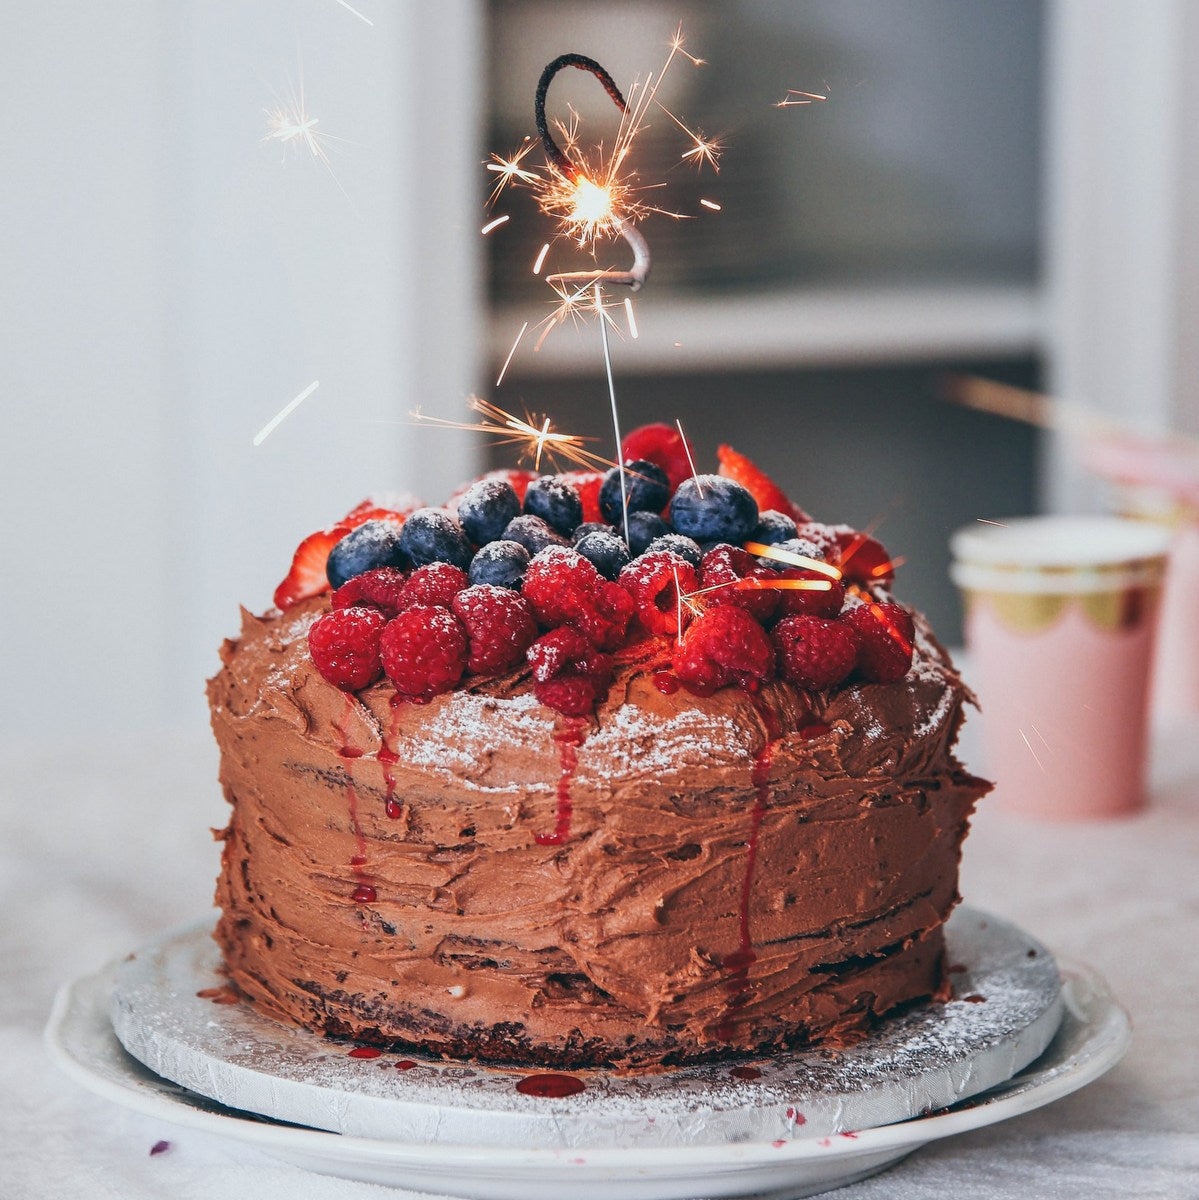 Signature Birthday Cake - Chocolate & Fresh Berries